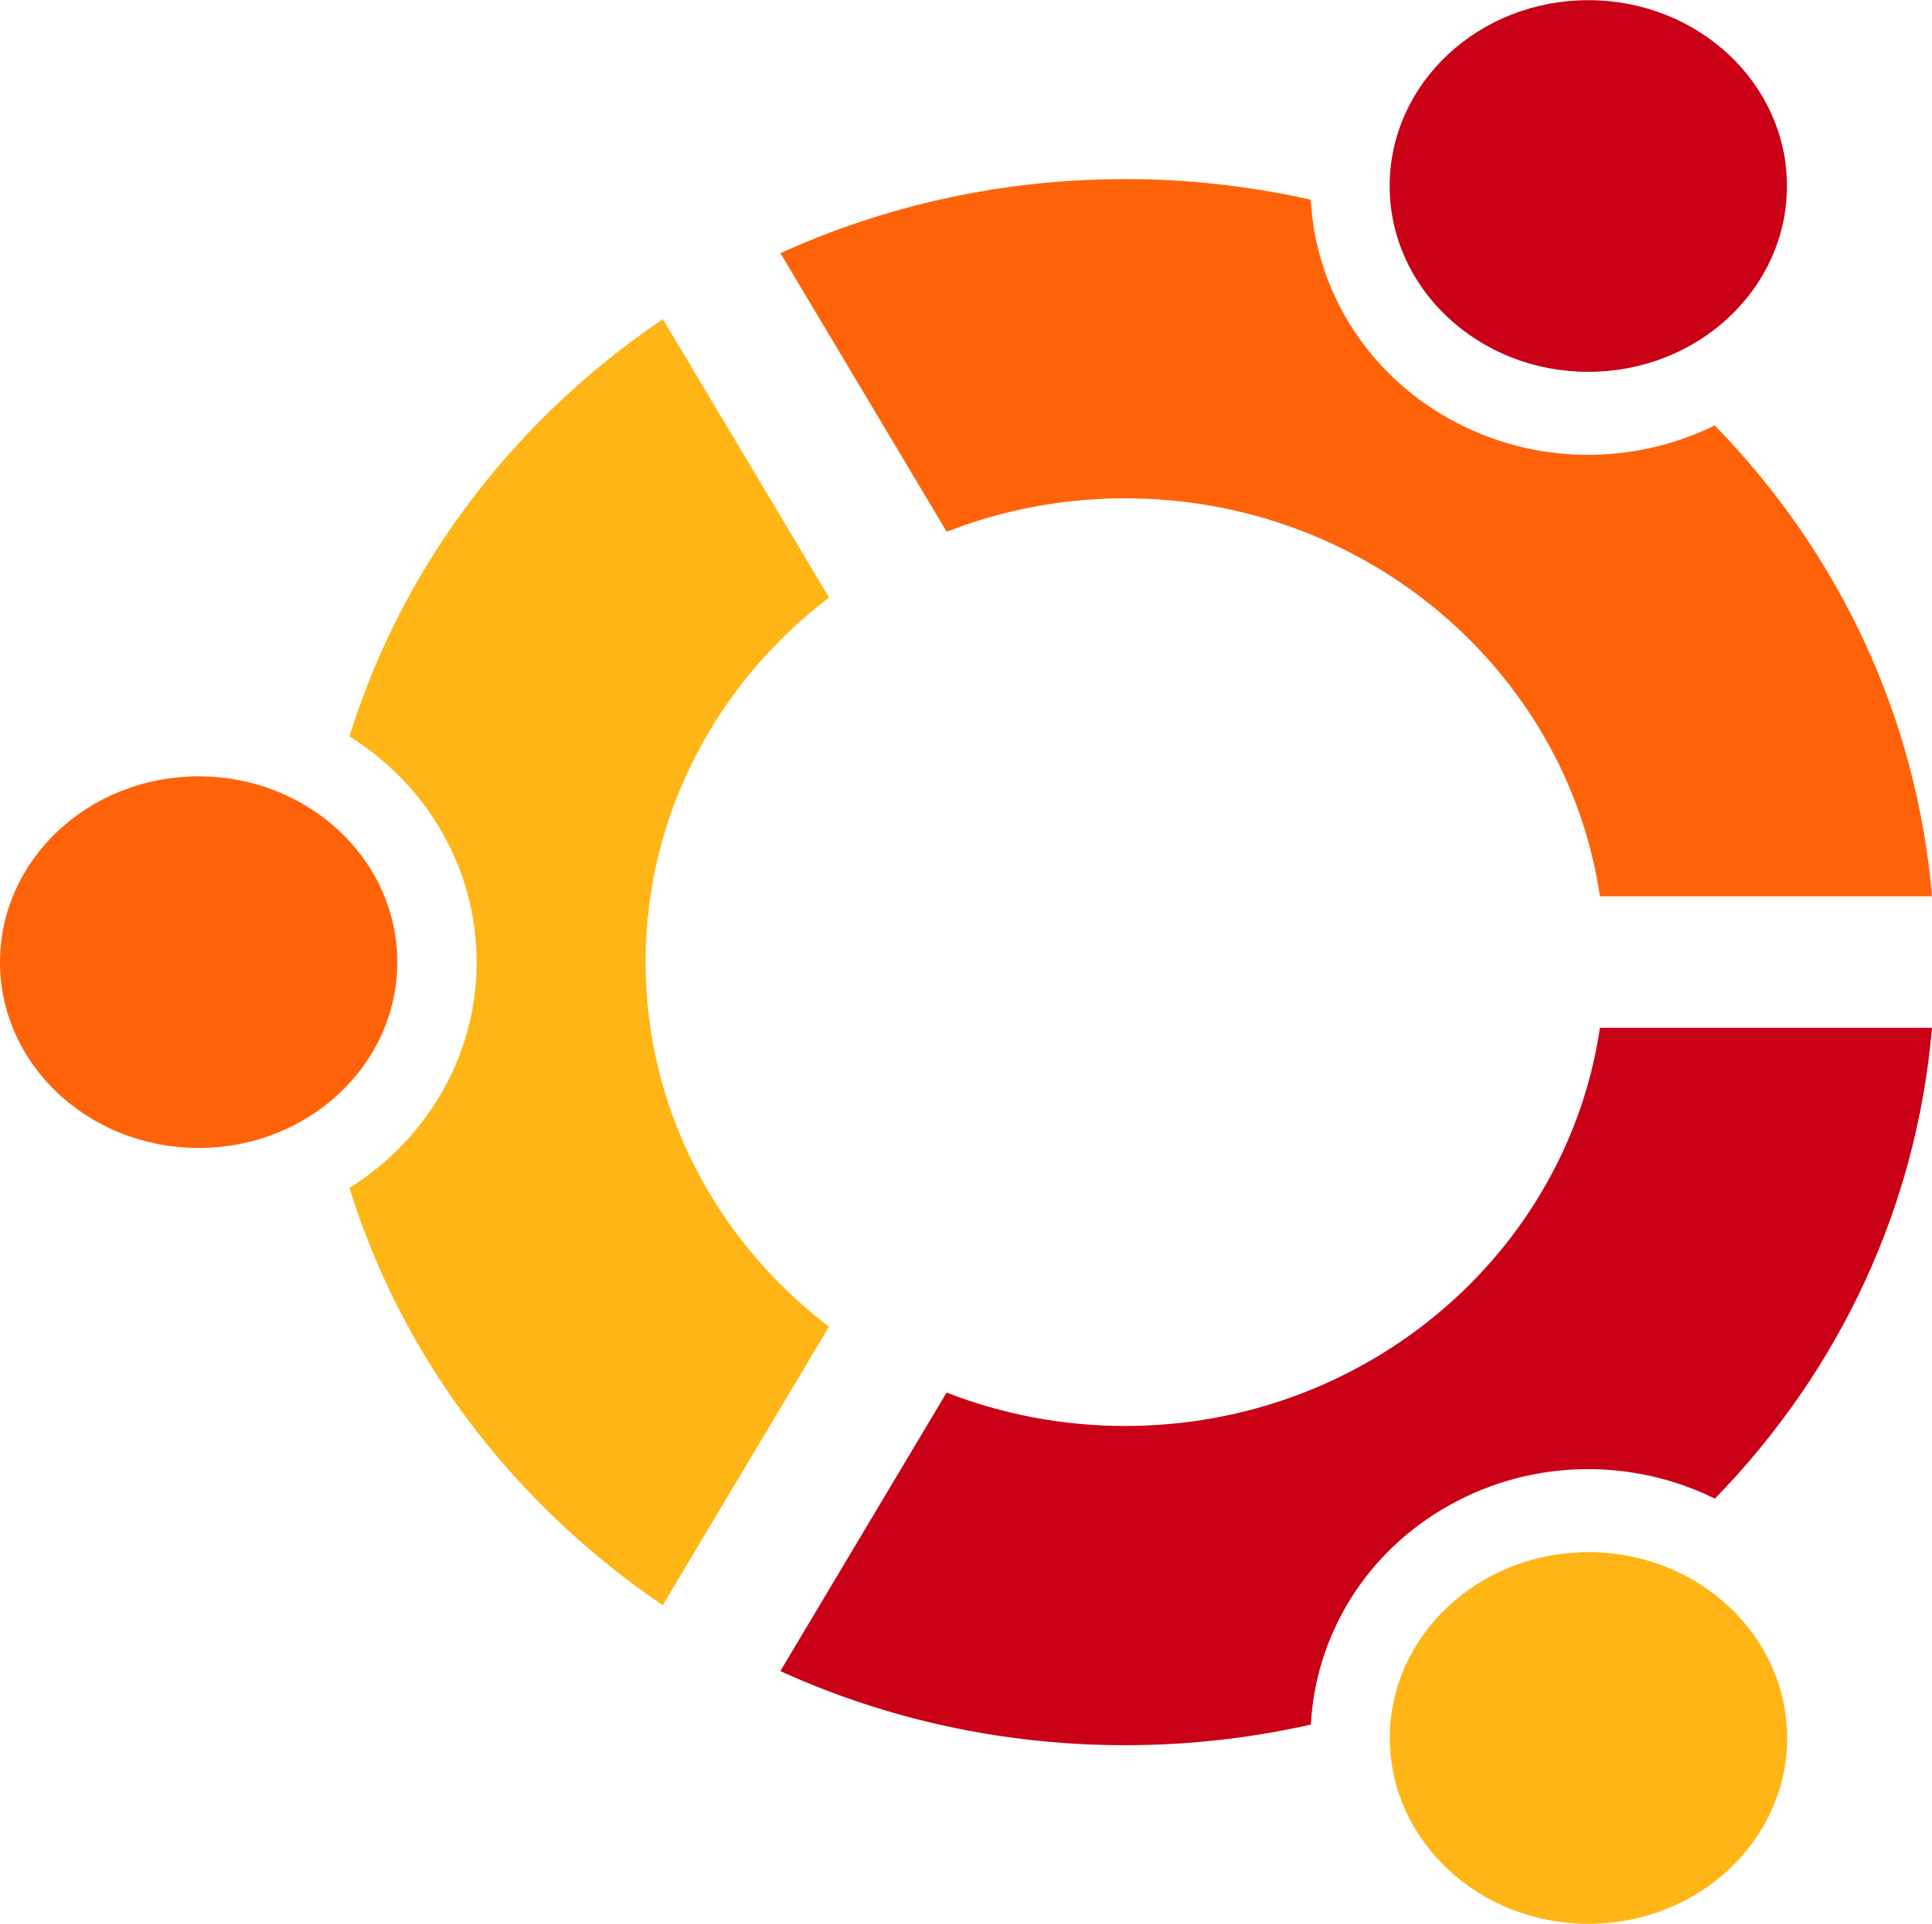 Ubuntu-Download